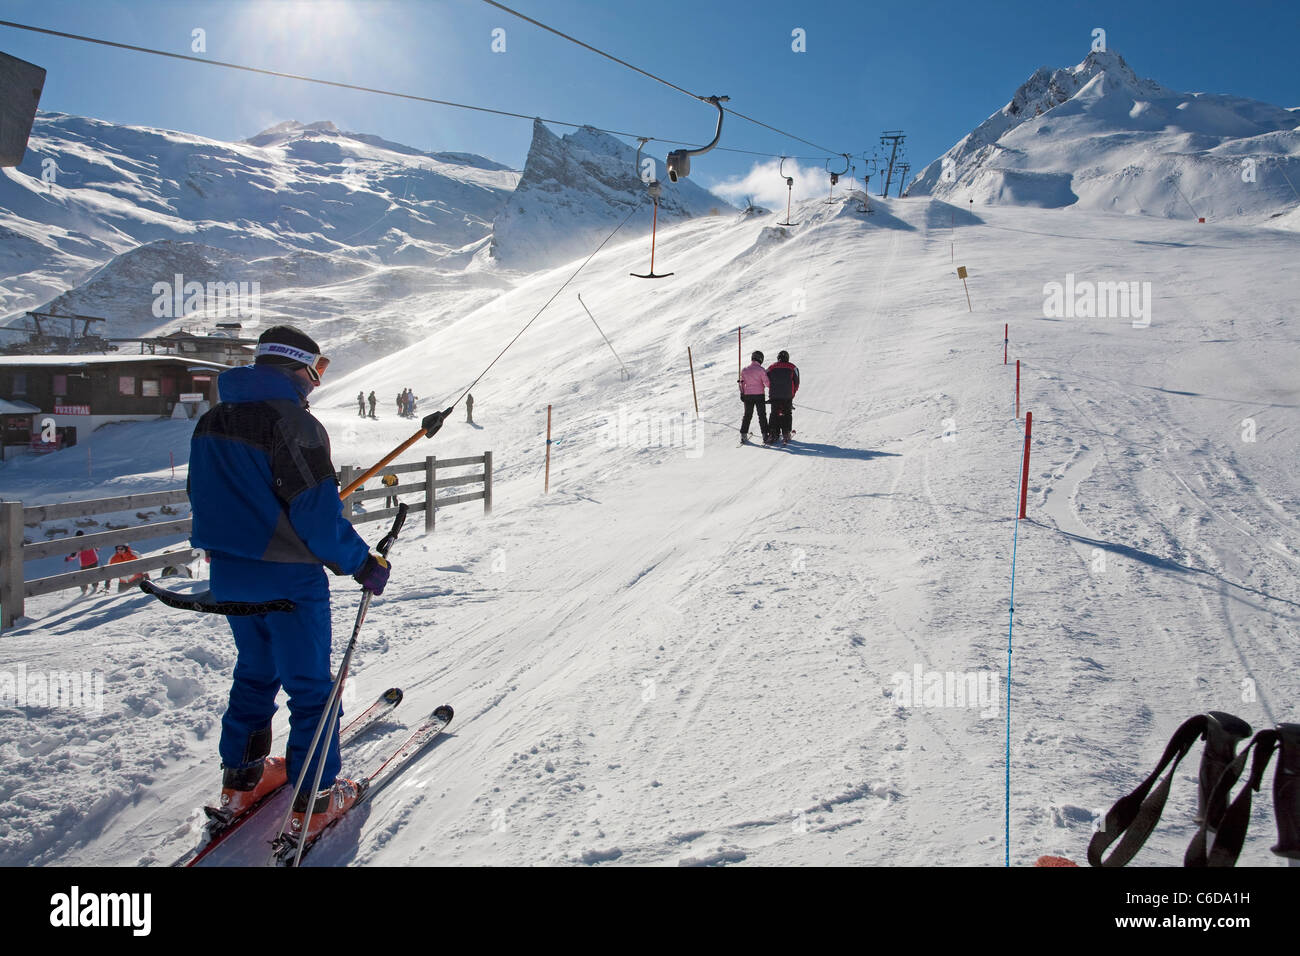 Skifahrer lassen sich mit dem Schlepplift auf den Berg, aus au skieur skilift Banque D'Images